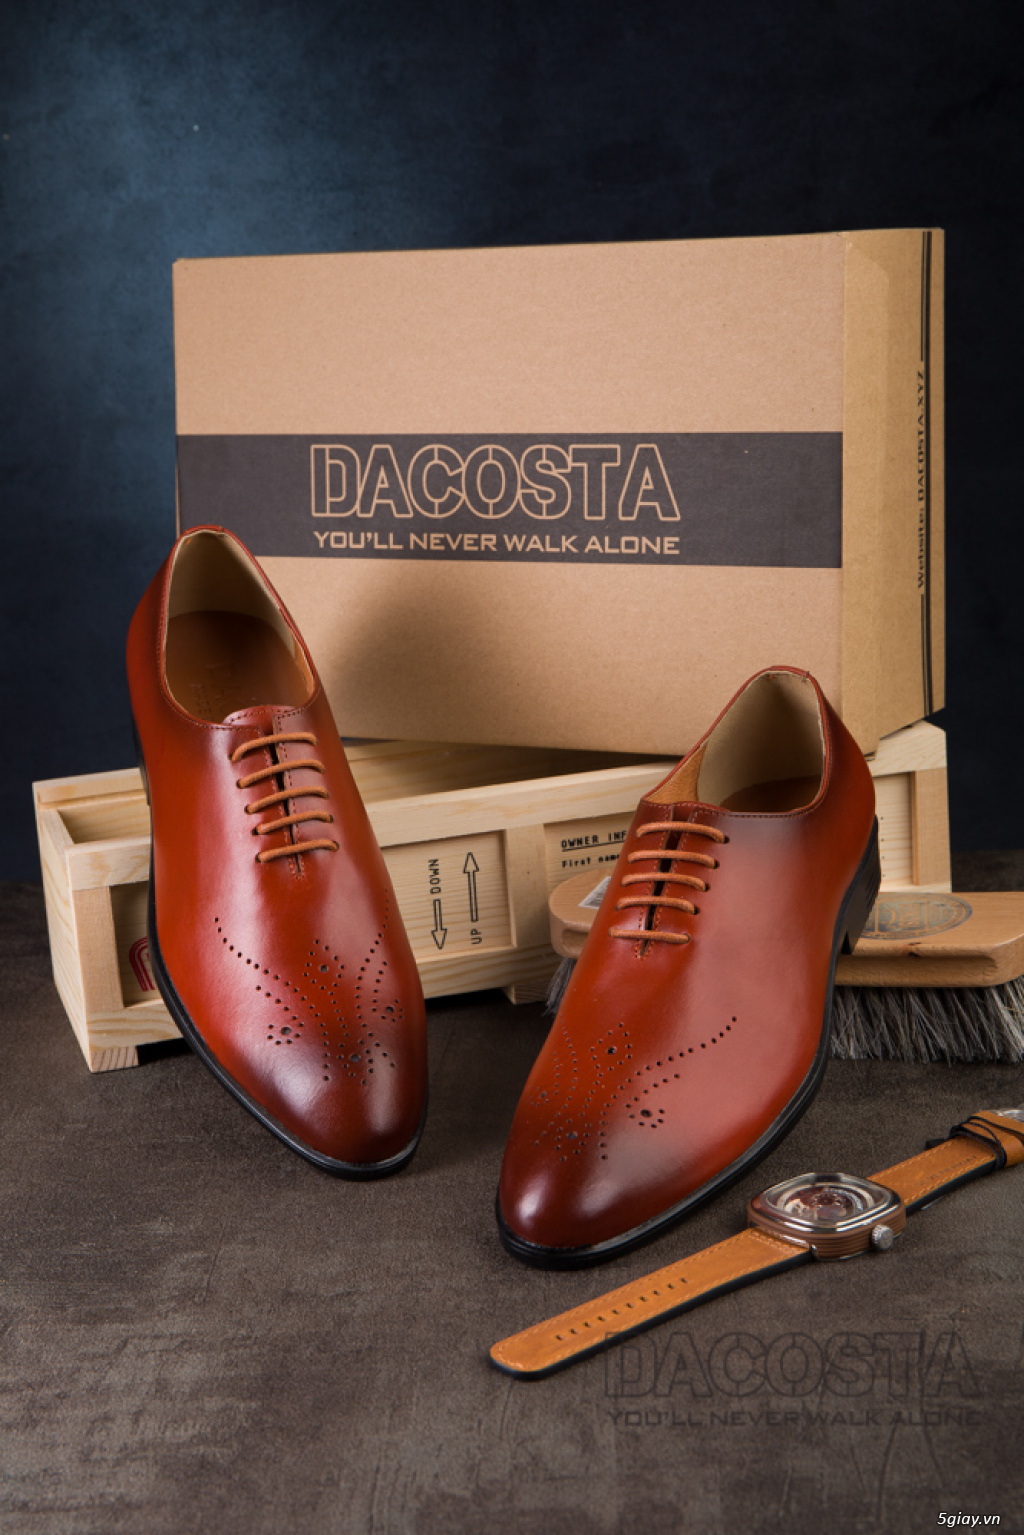 Tiệm Giày Dacosta - Những Mẫu Giày Tây Oxford Hot Nhất 2019 - 14